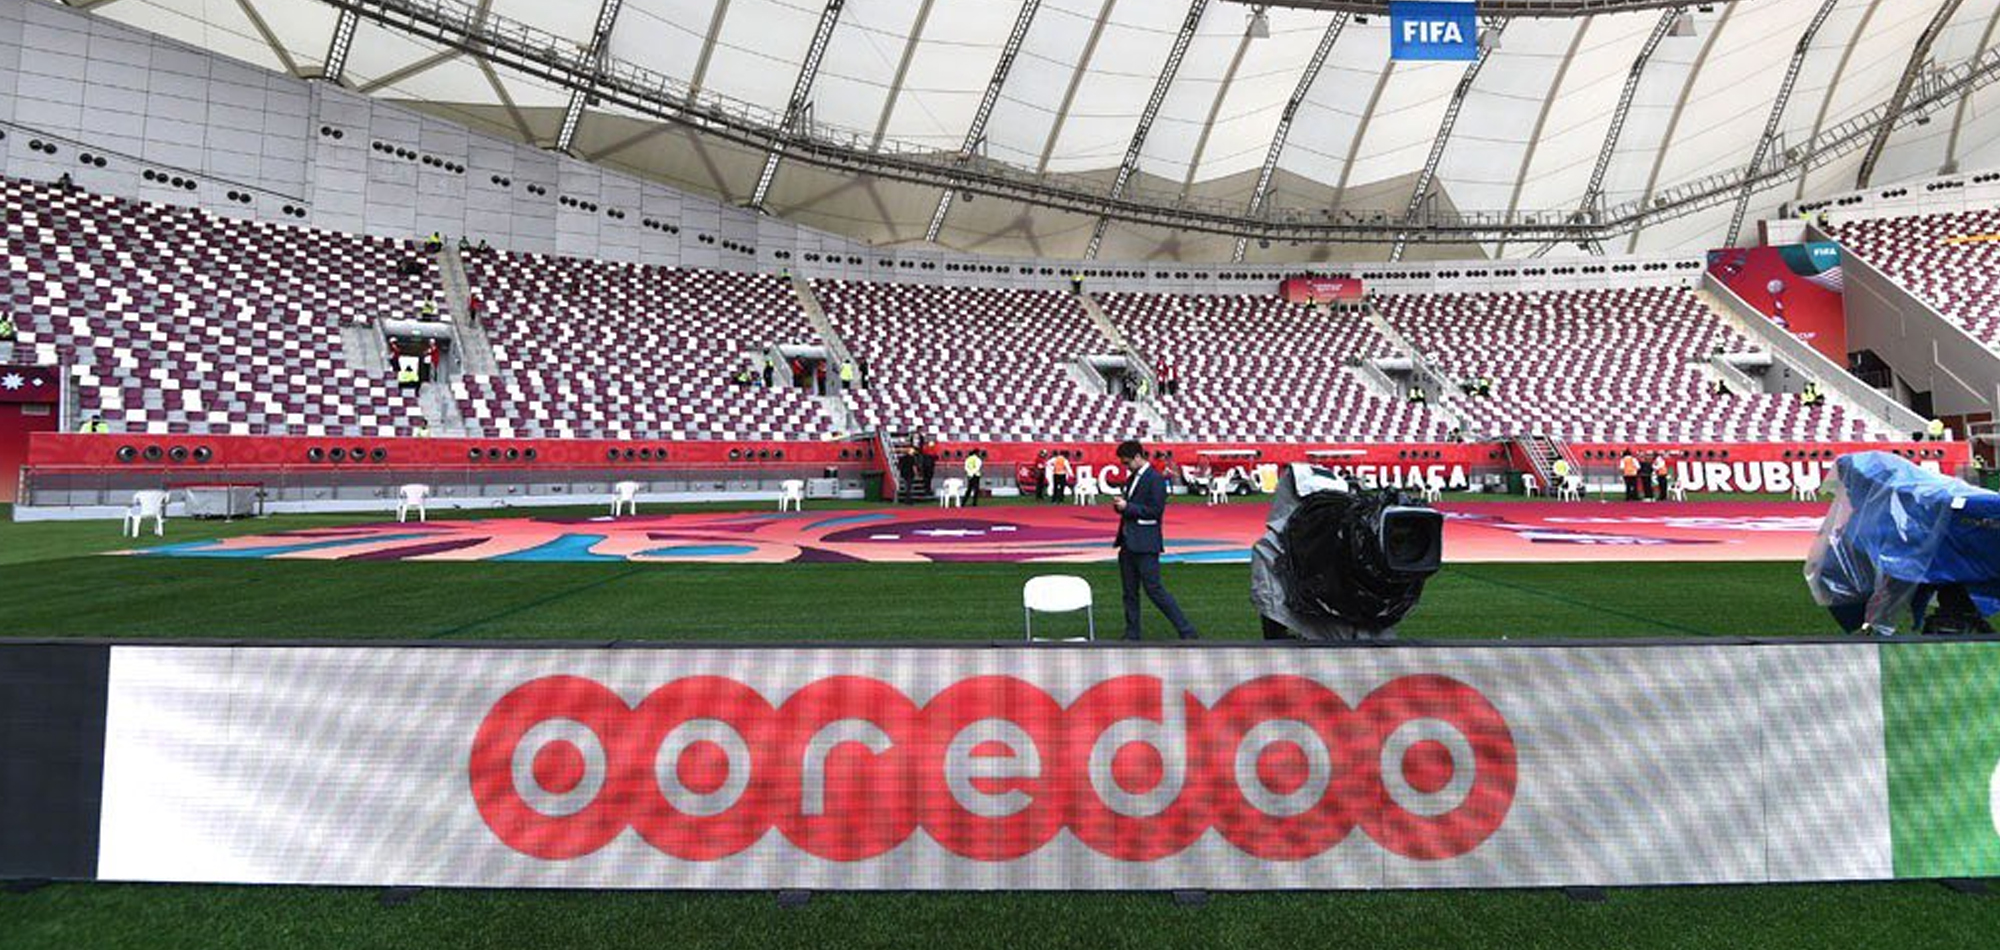 OOREDOO SIGNS UP AS REGIONAL SUPPORTER OF FIFA WORLD CUP QATAR 2022, FIFA ARAB CUP QATAR 2021